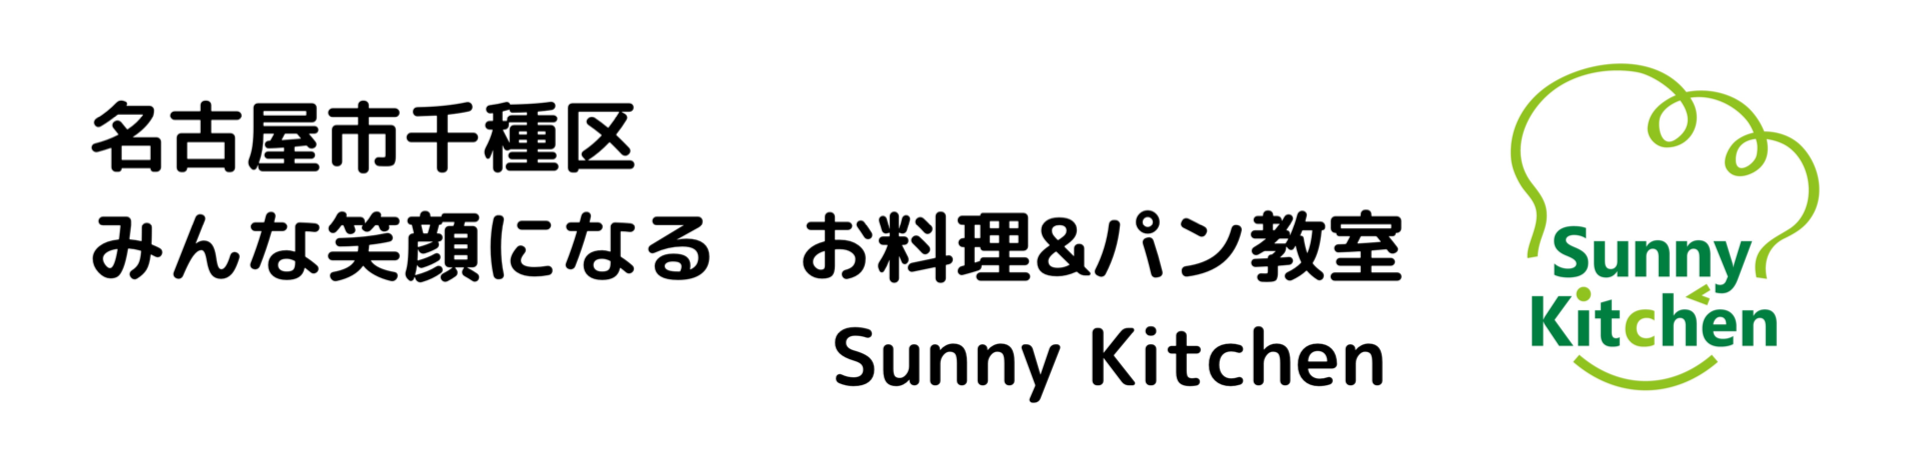 名古屋市千種区 みんな笑顔になるお料理教室&パン教室Sunny Kitchen